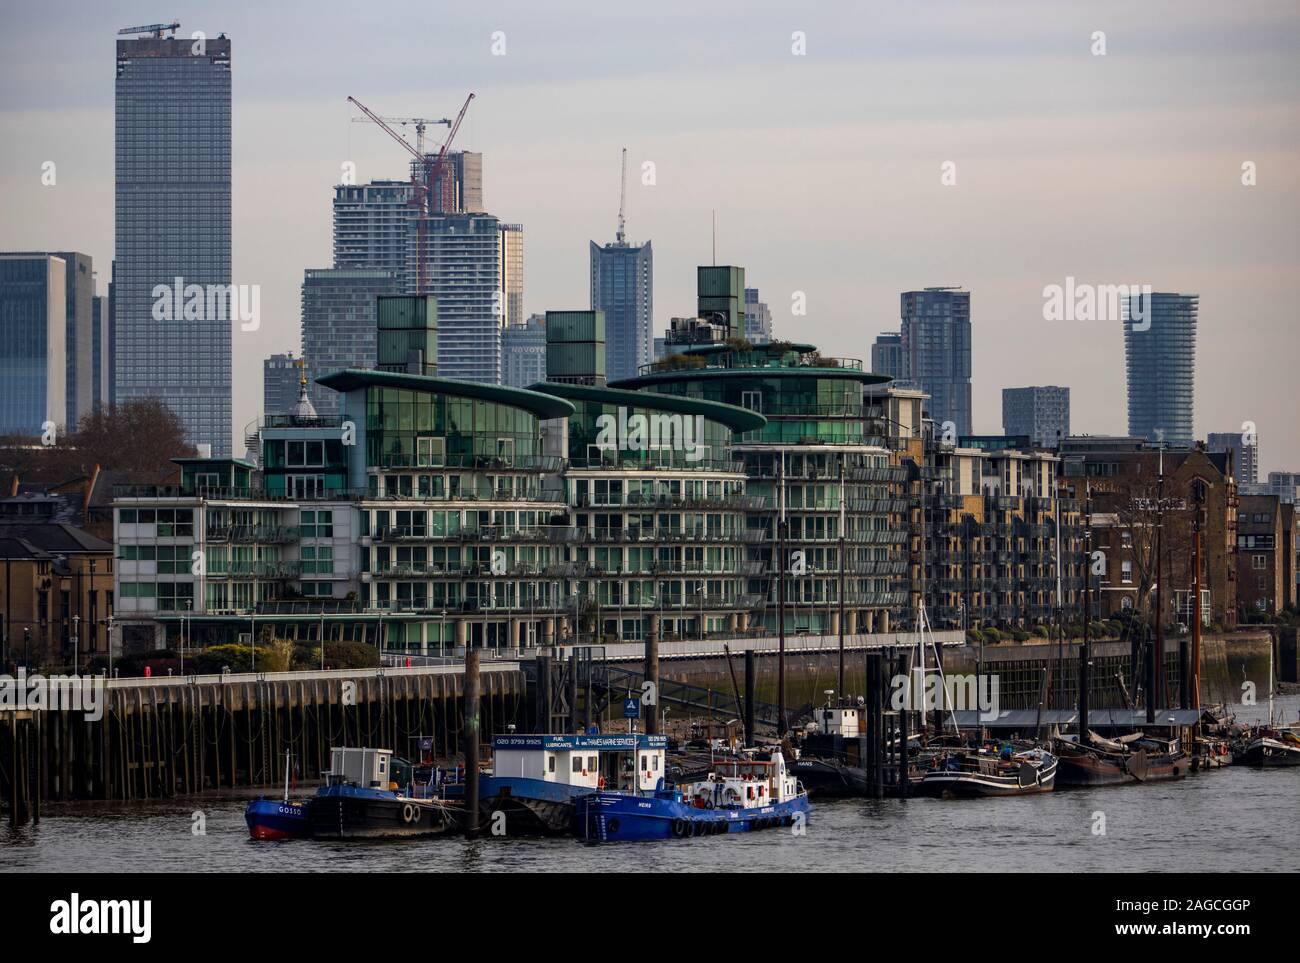 Bürogebäudekomplex Canary Wharf auf der Isle of Dogs im Londoner Stadtteil Tower Hamlets, Docklands, der ehemalige Hafen von London, Vereinigtes Königreich, Stockfoto